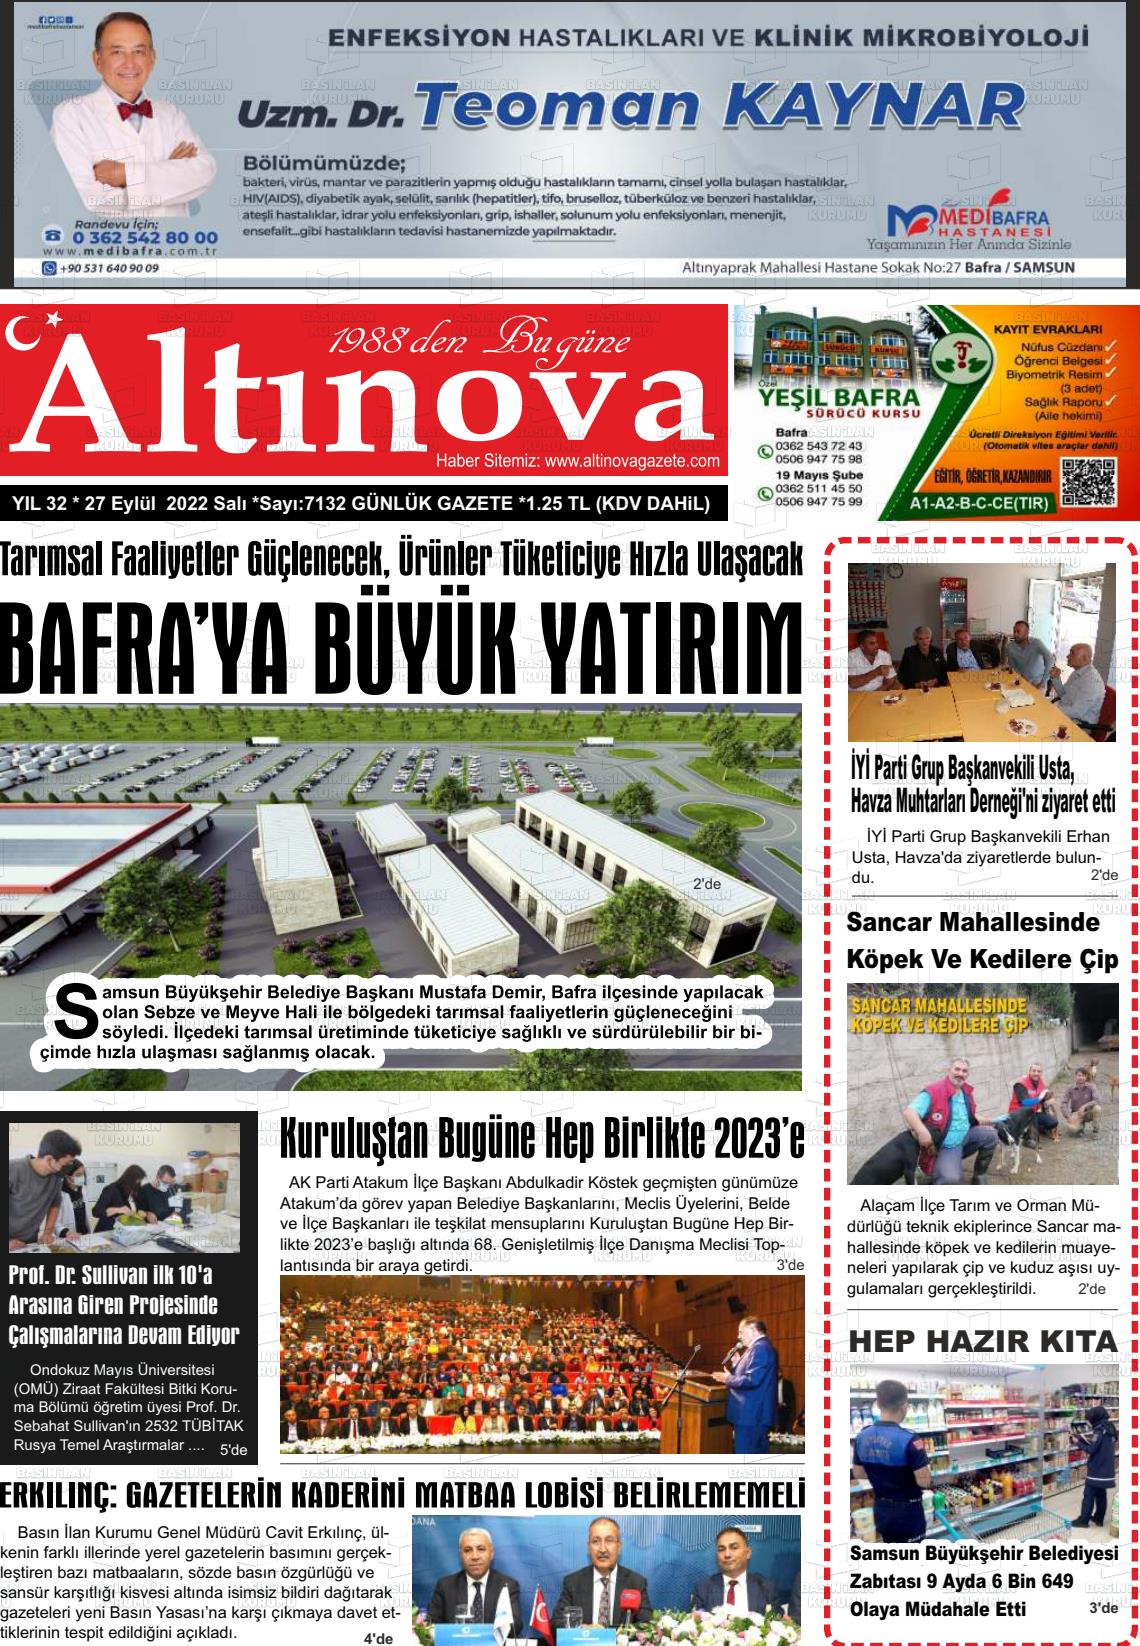 27 Eylül 2022 Altınova Gazete Manşeti